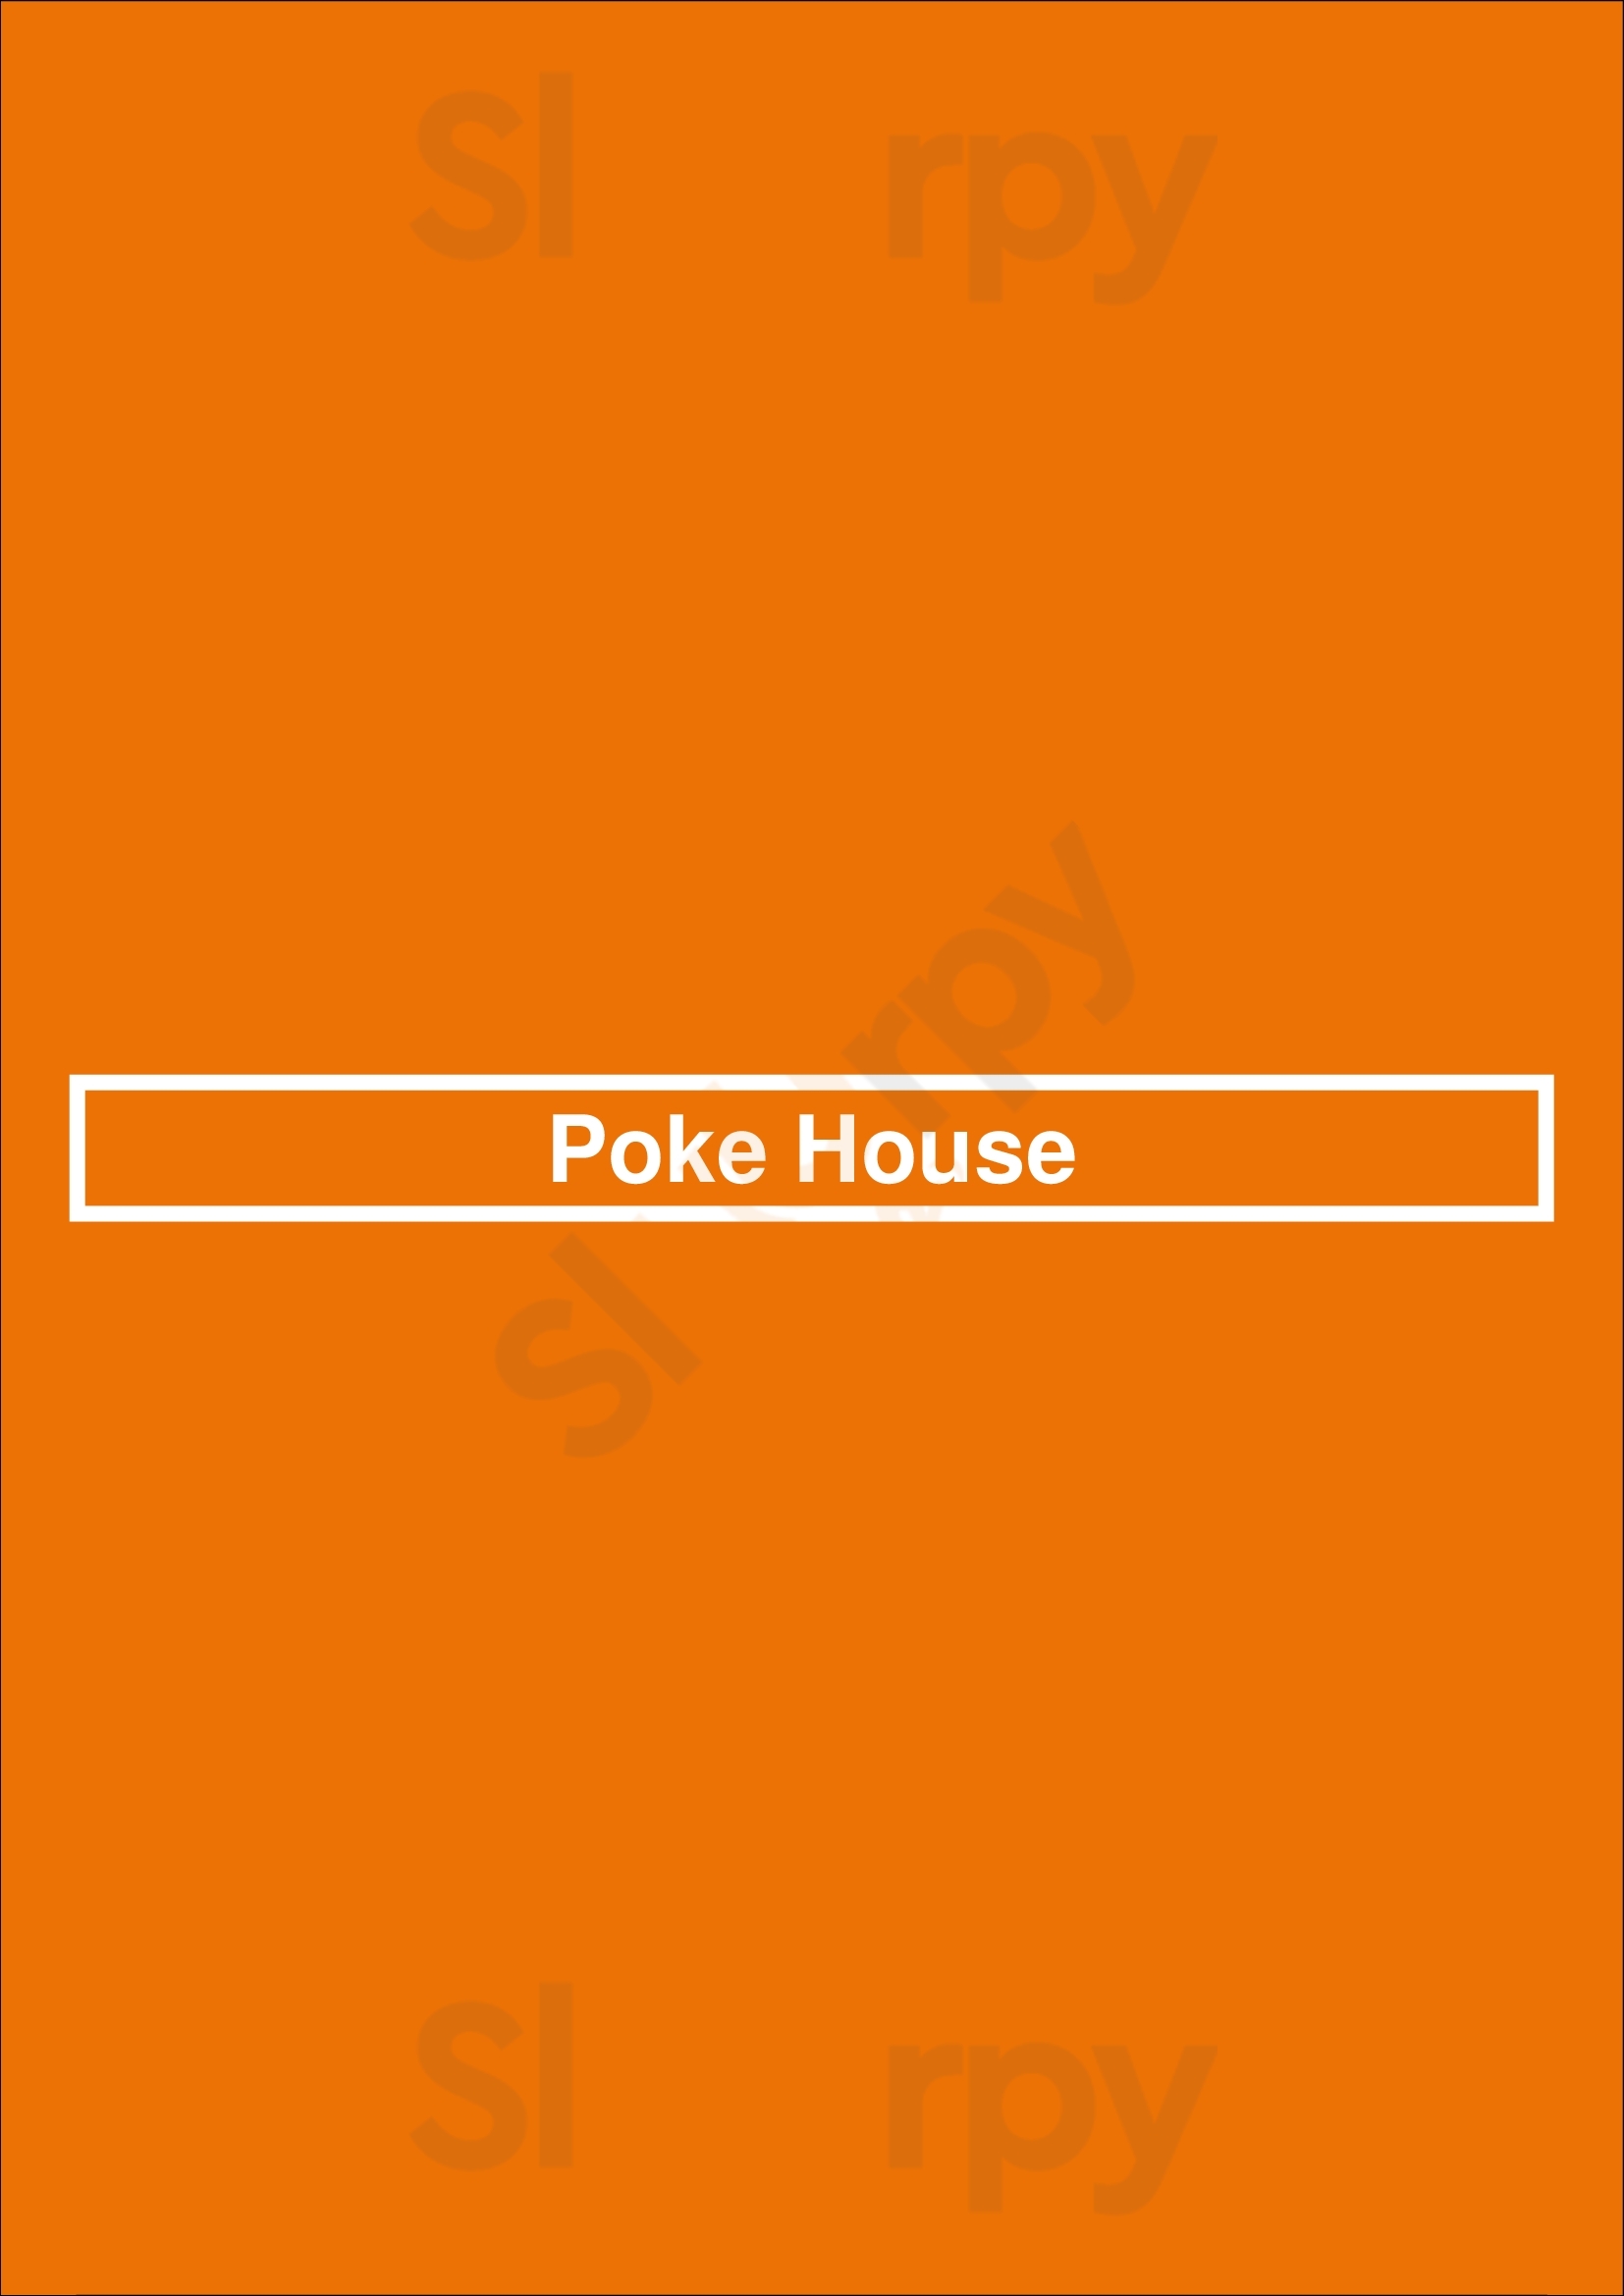 Poke House San Jose Menu - 1